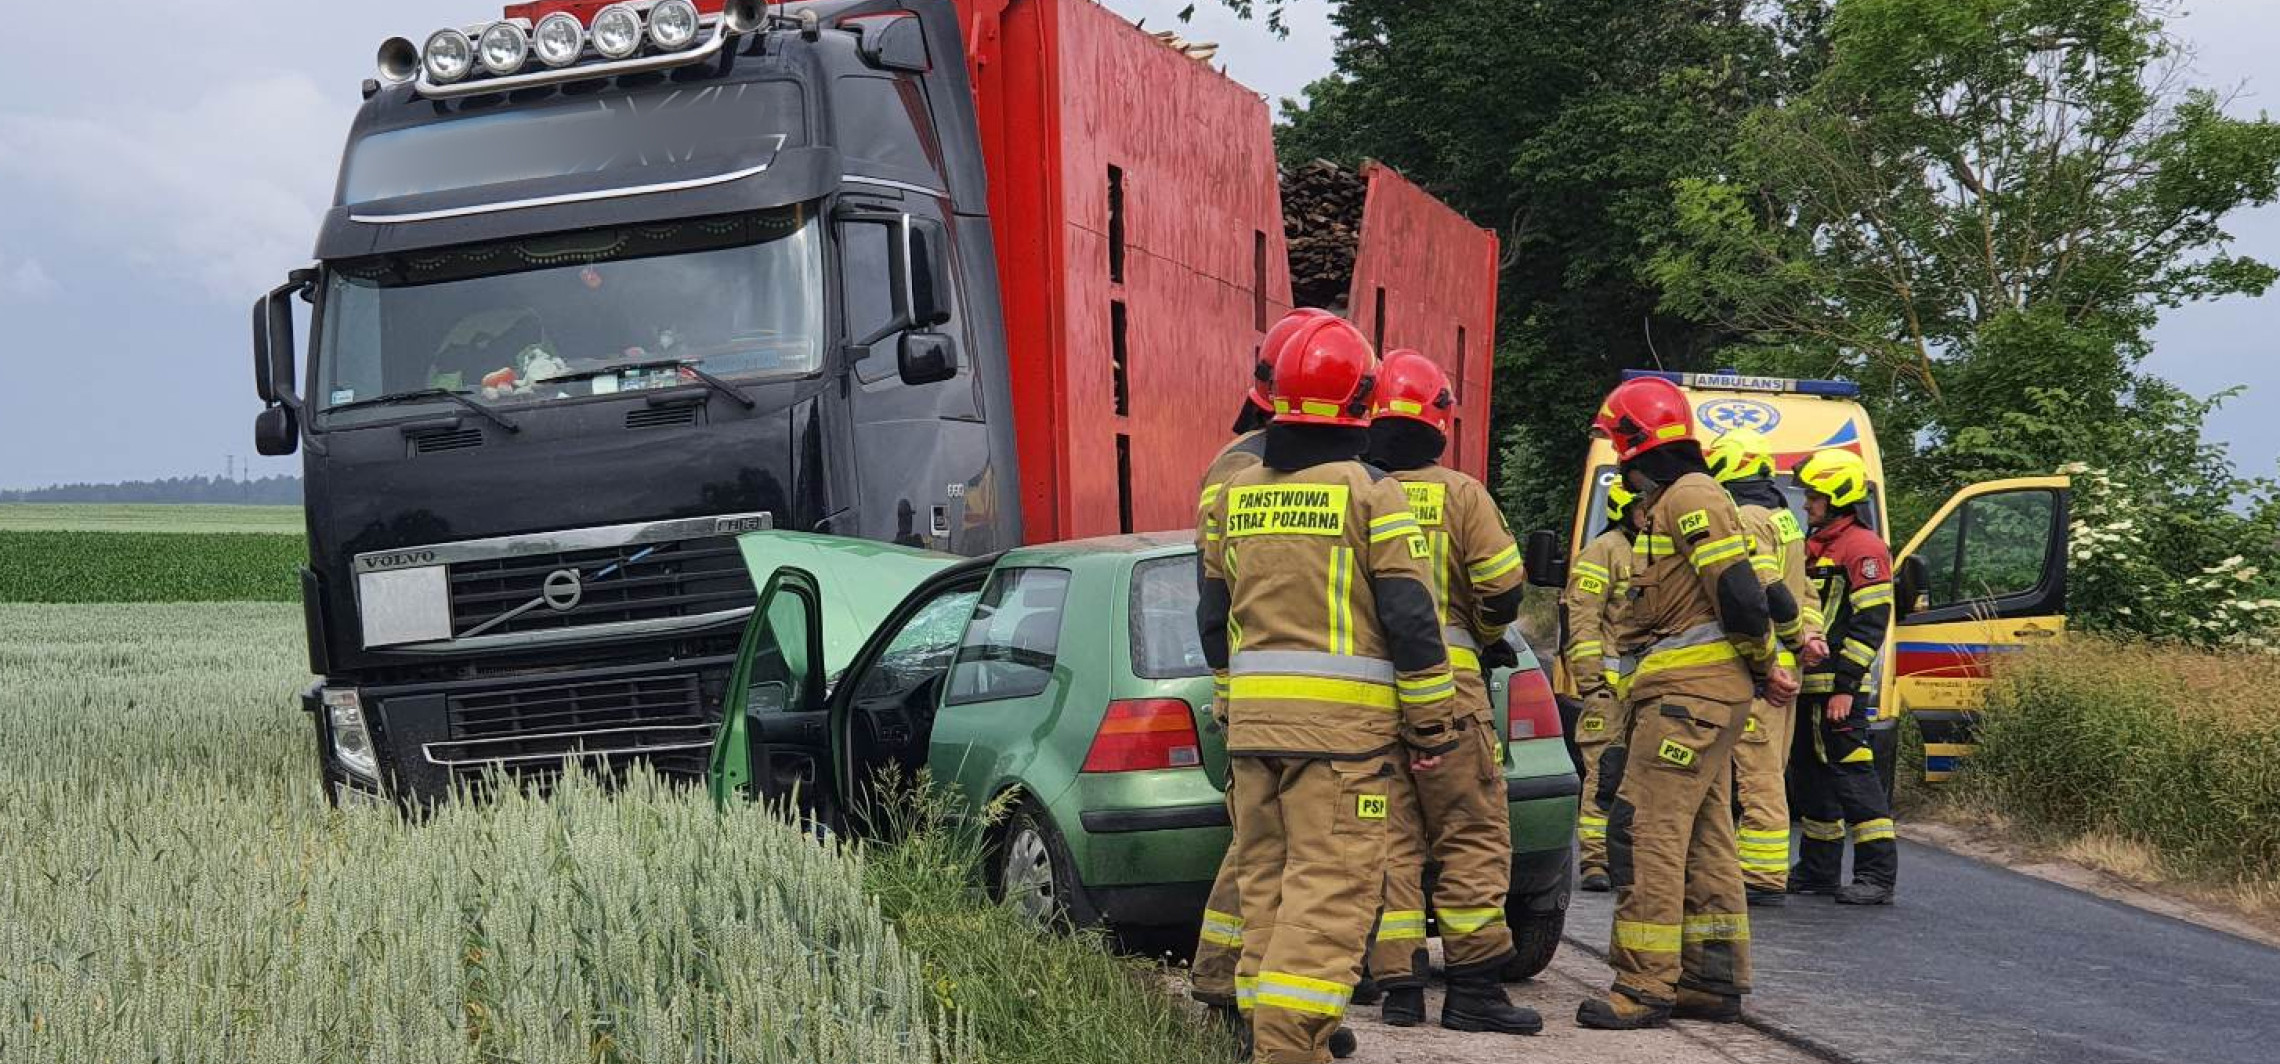 Gniewkowo - Koło Gniewkowa ciężarówka zderzyła się z osobówką